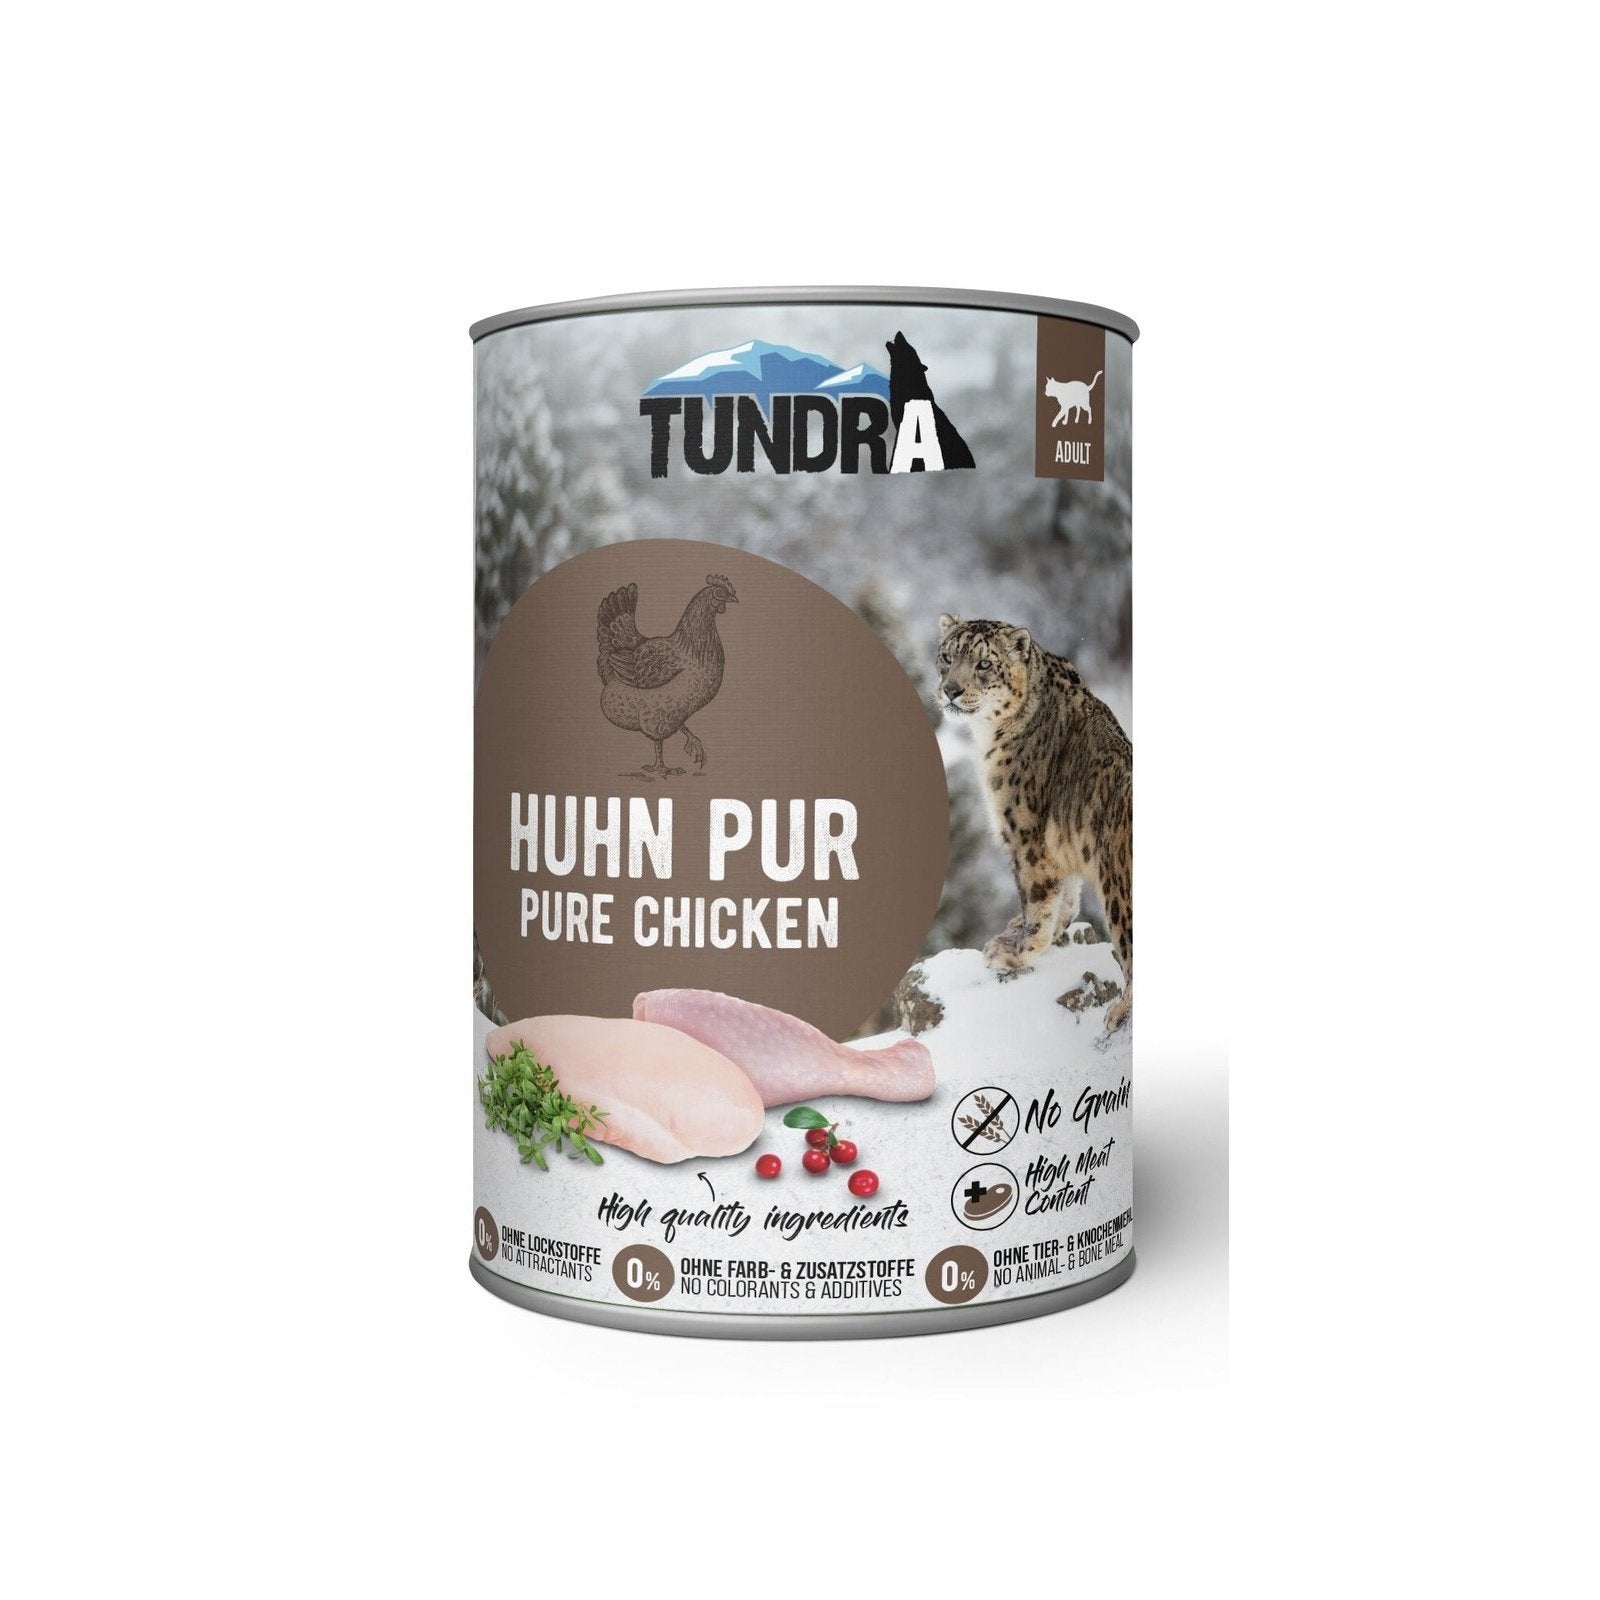 Artikel mit dem Namen Tundra Katze Huhn Pur Dose im Shop von zoo.de , dem Onlineshop für nachhaltiges Hundefutter und Katzenfutter.